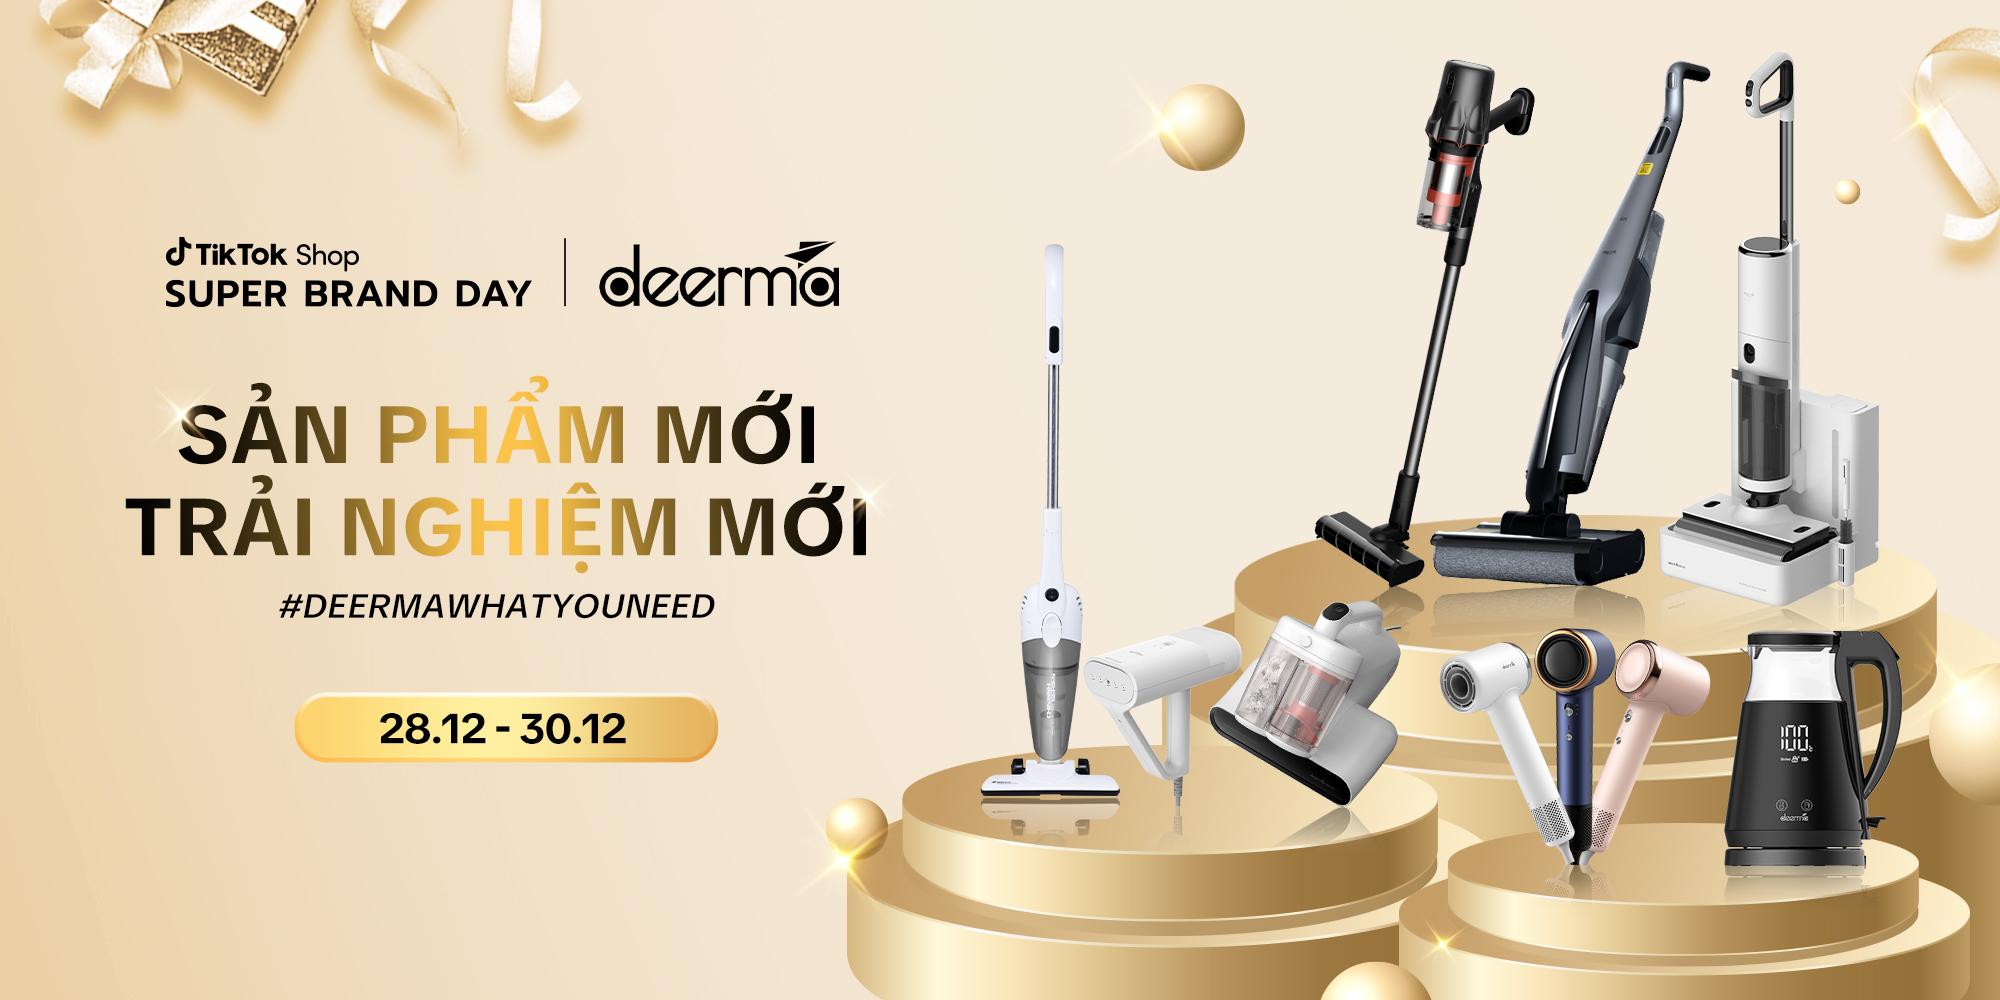 Ngày hội siêu sale Deerma Việt Nam x TikTok Shop: Săn sản phẩm mới tại chuỗi livestream - Ảnh 2.